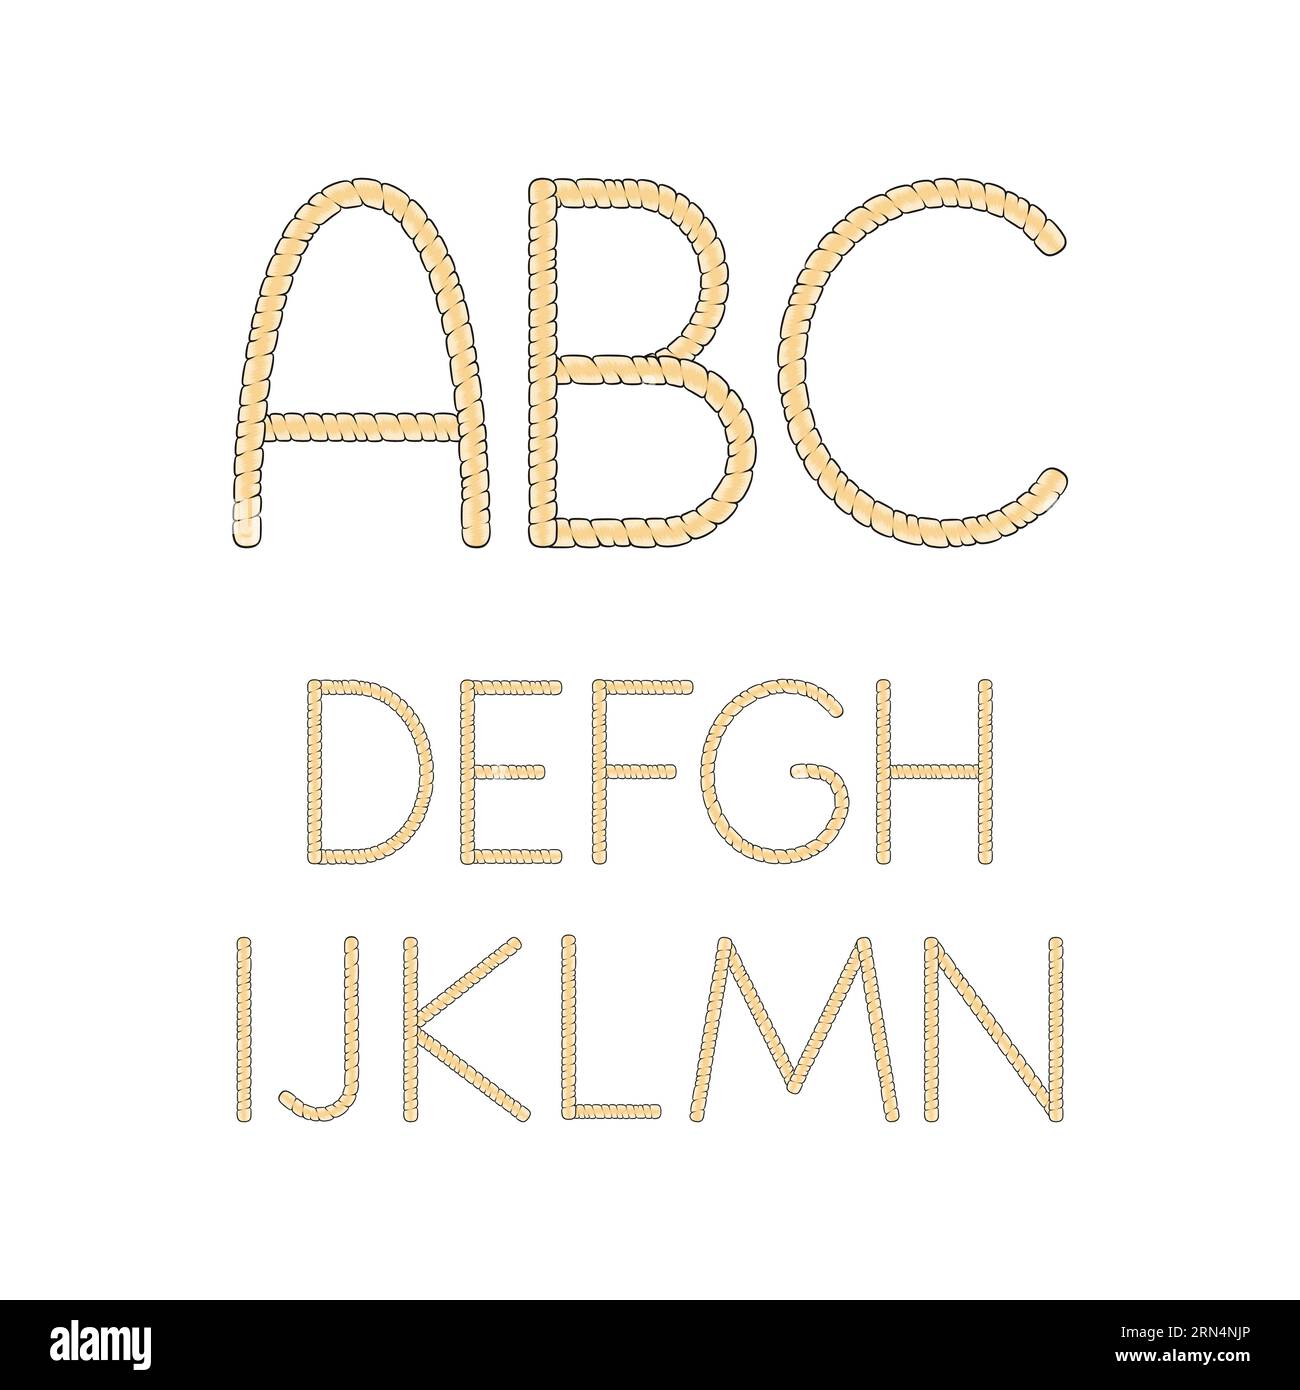 Schriftart, Alphabet, Buchstaben von blonden Dreadlocks von A bis N. isolierte Vektorobjekte auf weißem Hintergrund. Stock Vektor